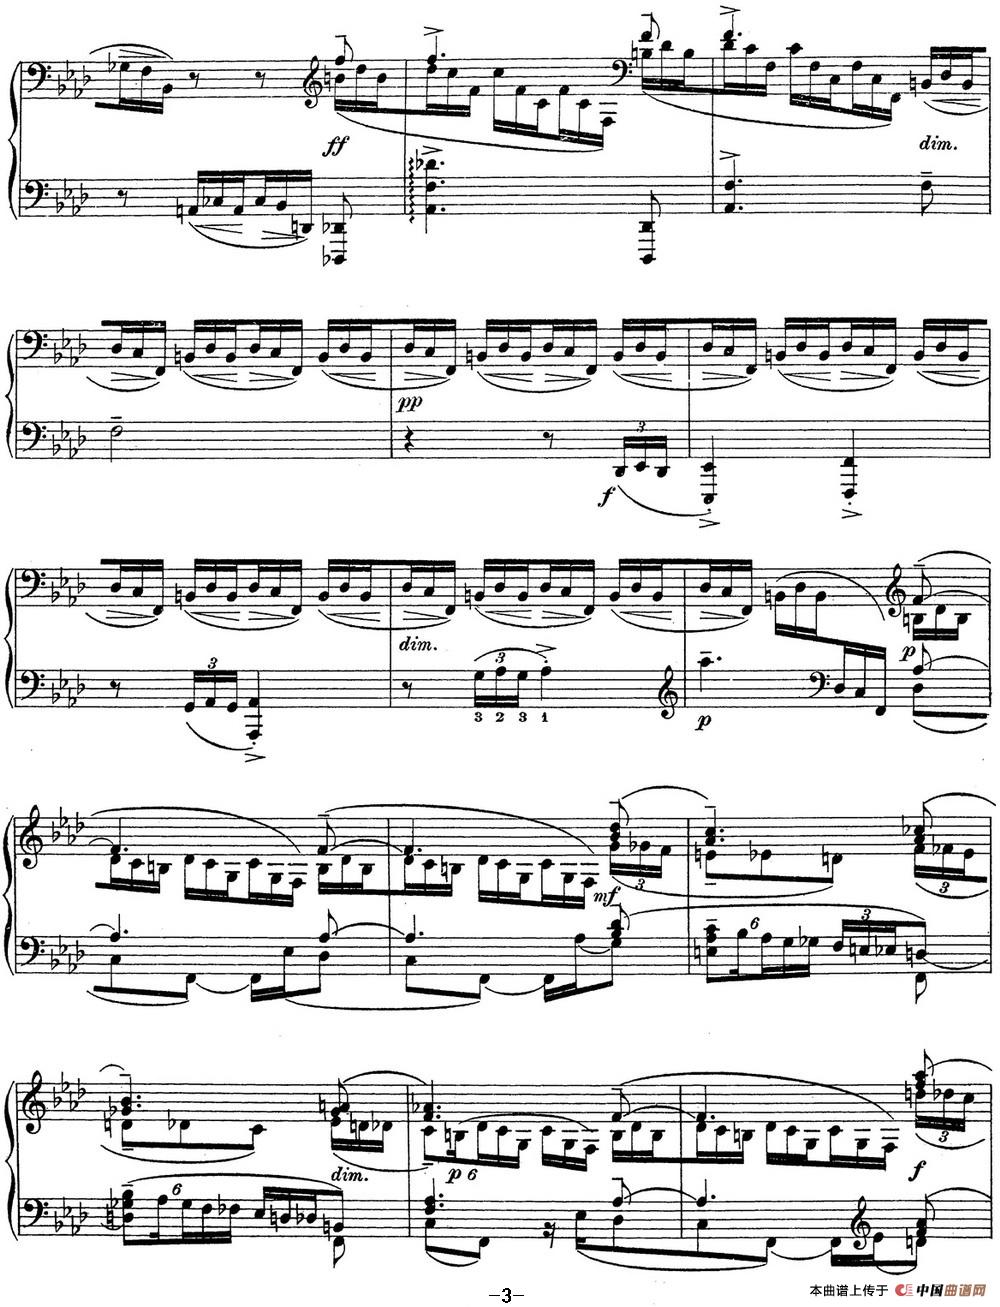 拉赫玛尼诺夫 钢琴前奏曲17 F小调 Op.32 No.6